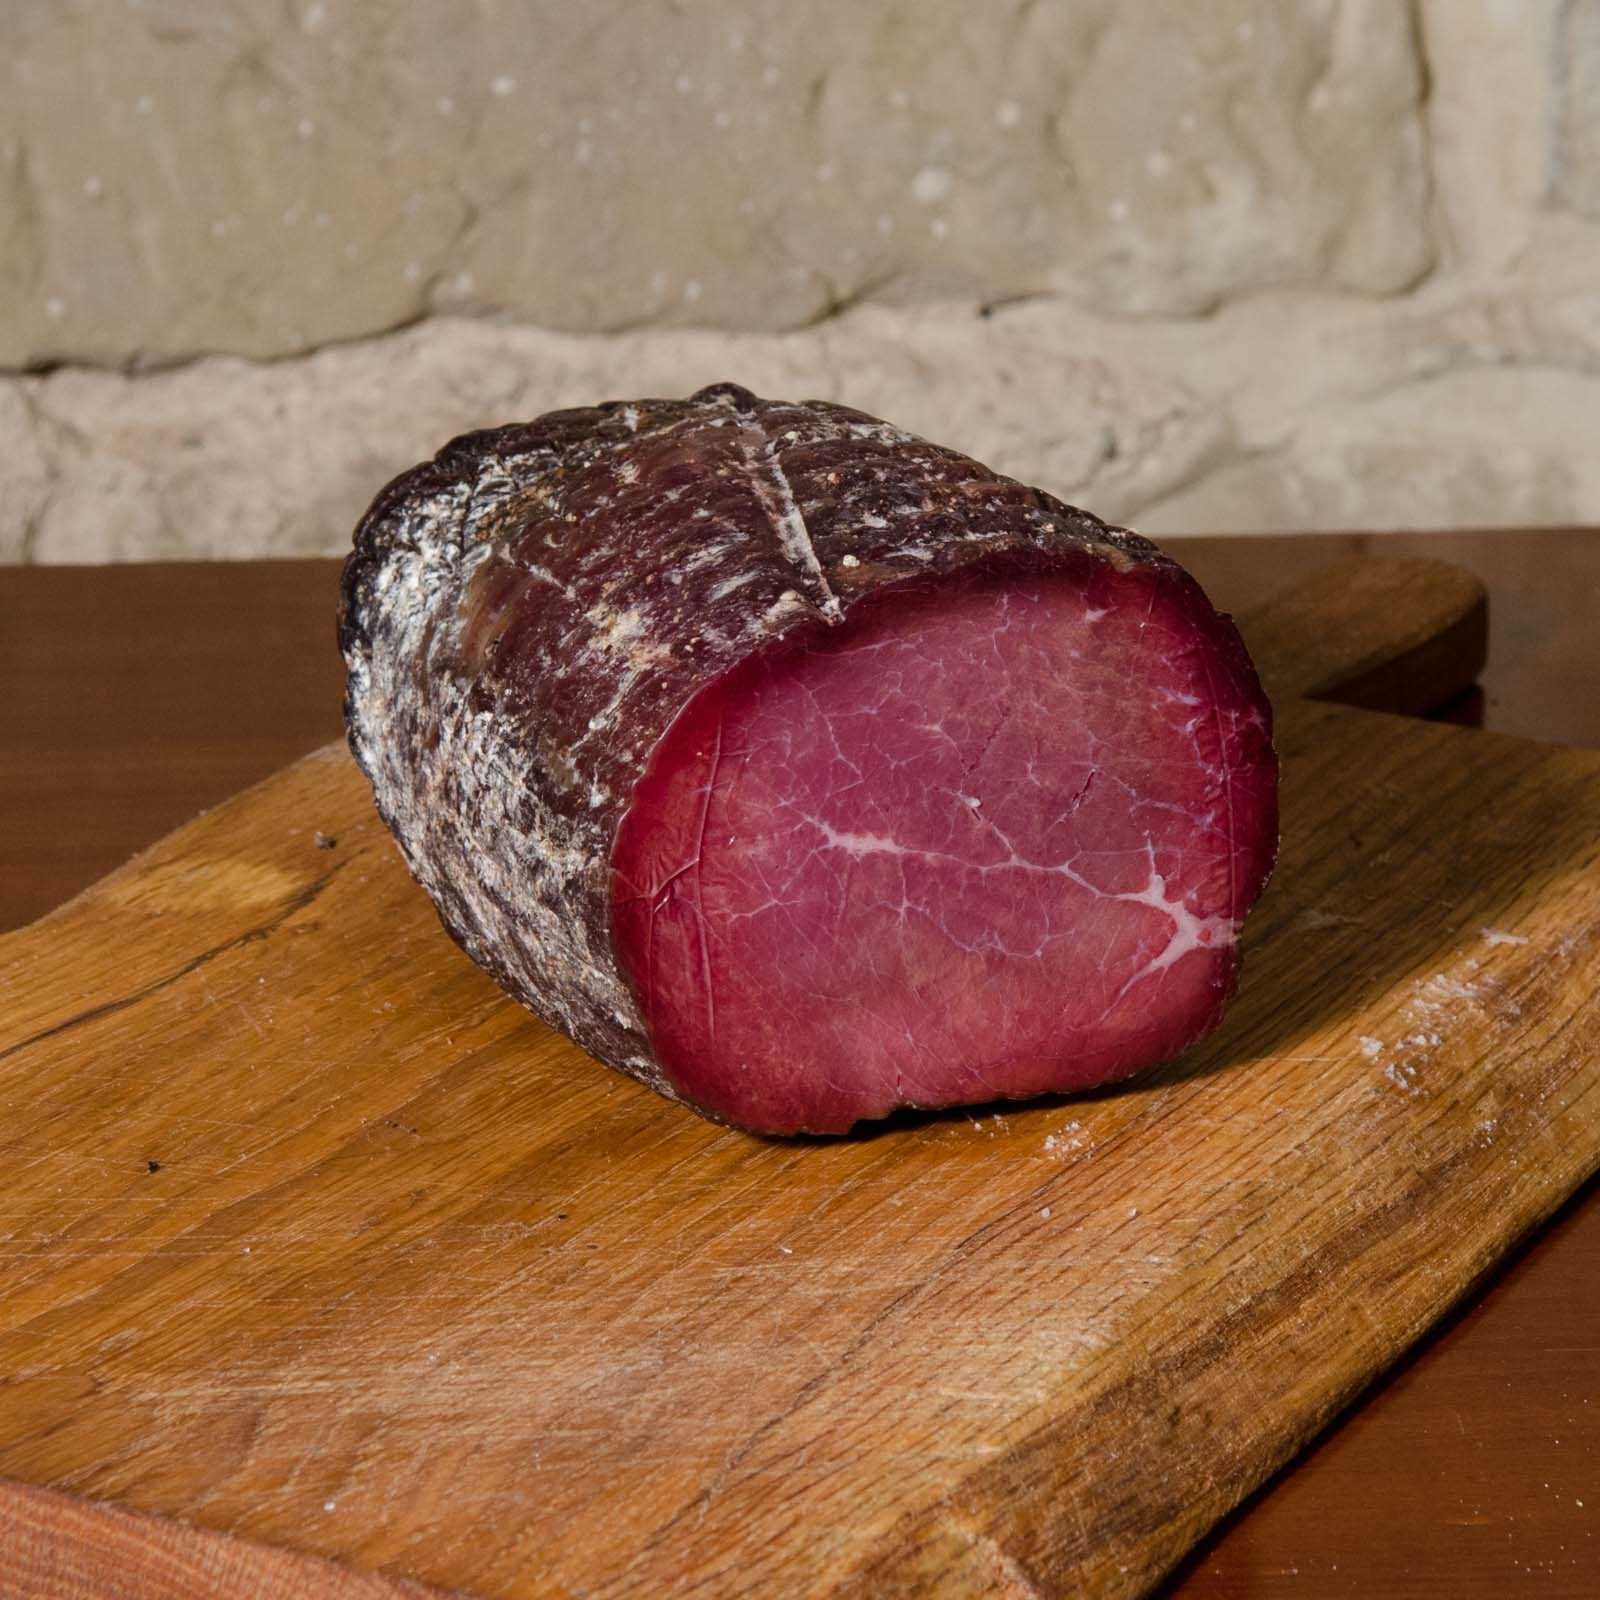 Bresaola di carne bovina chianina, prodotta artigianalmente, perfetta nelle diete povere di grassi e ricche di proteine.